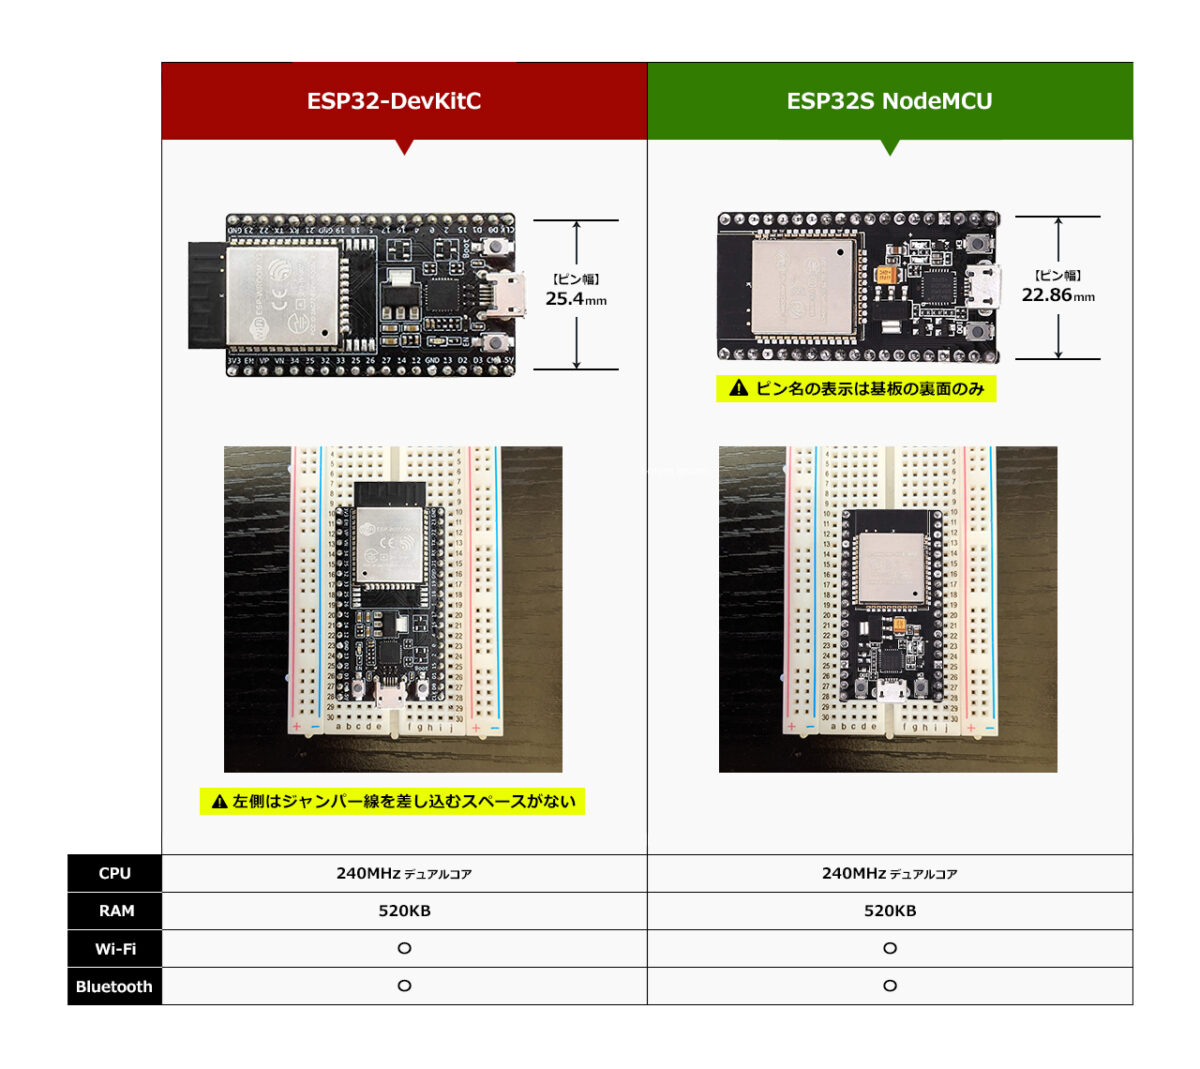 「ESP32-DevKitC」と「ESP32S NodeMCU」の比較画像